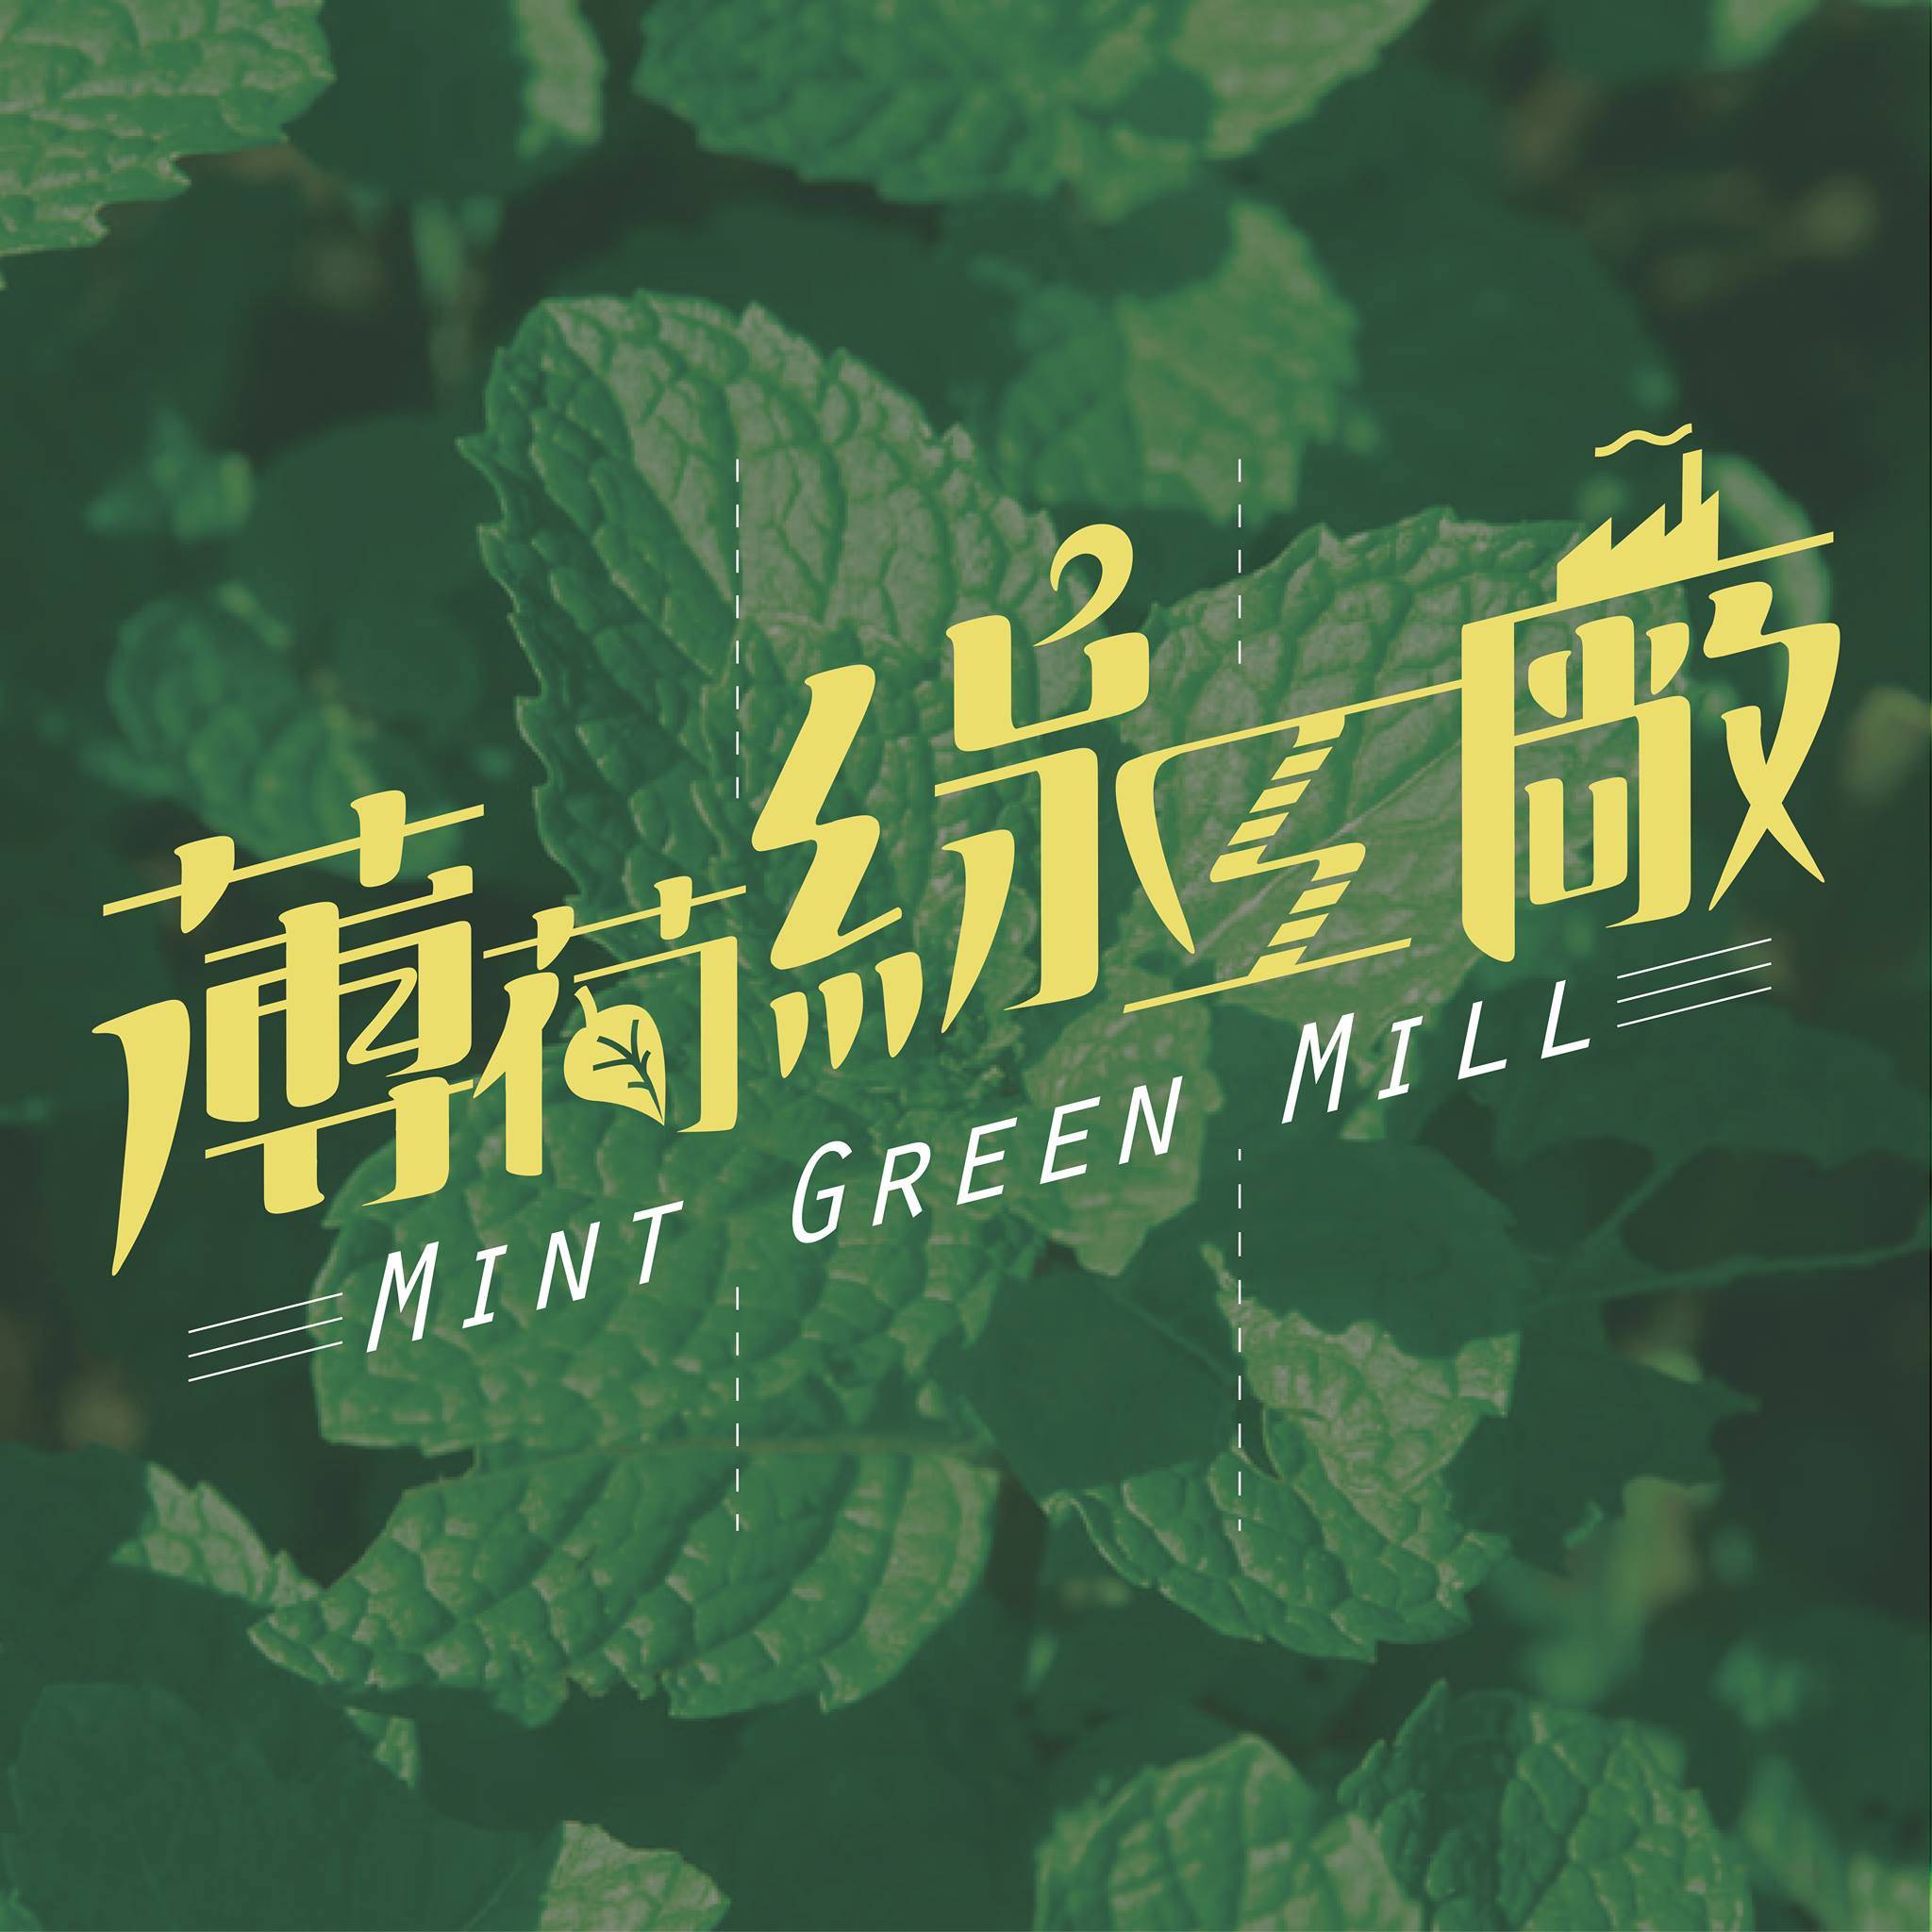 薄荷綠工廠 mint green mill